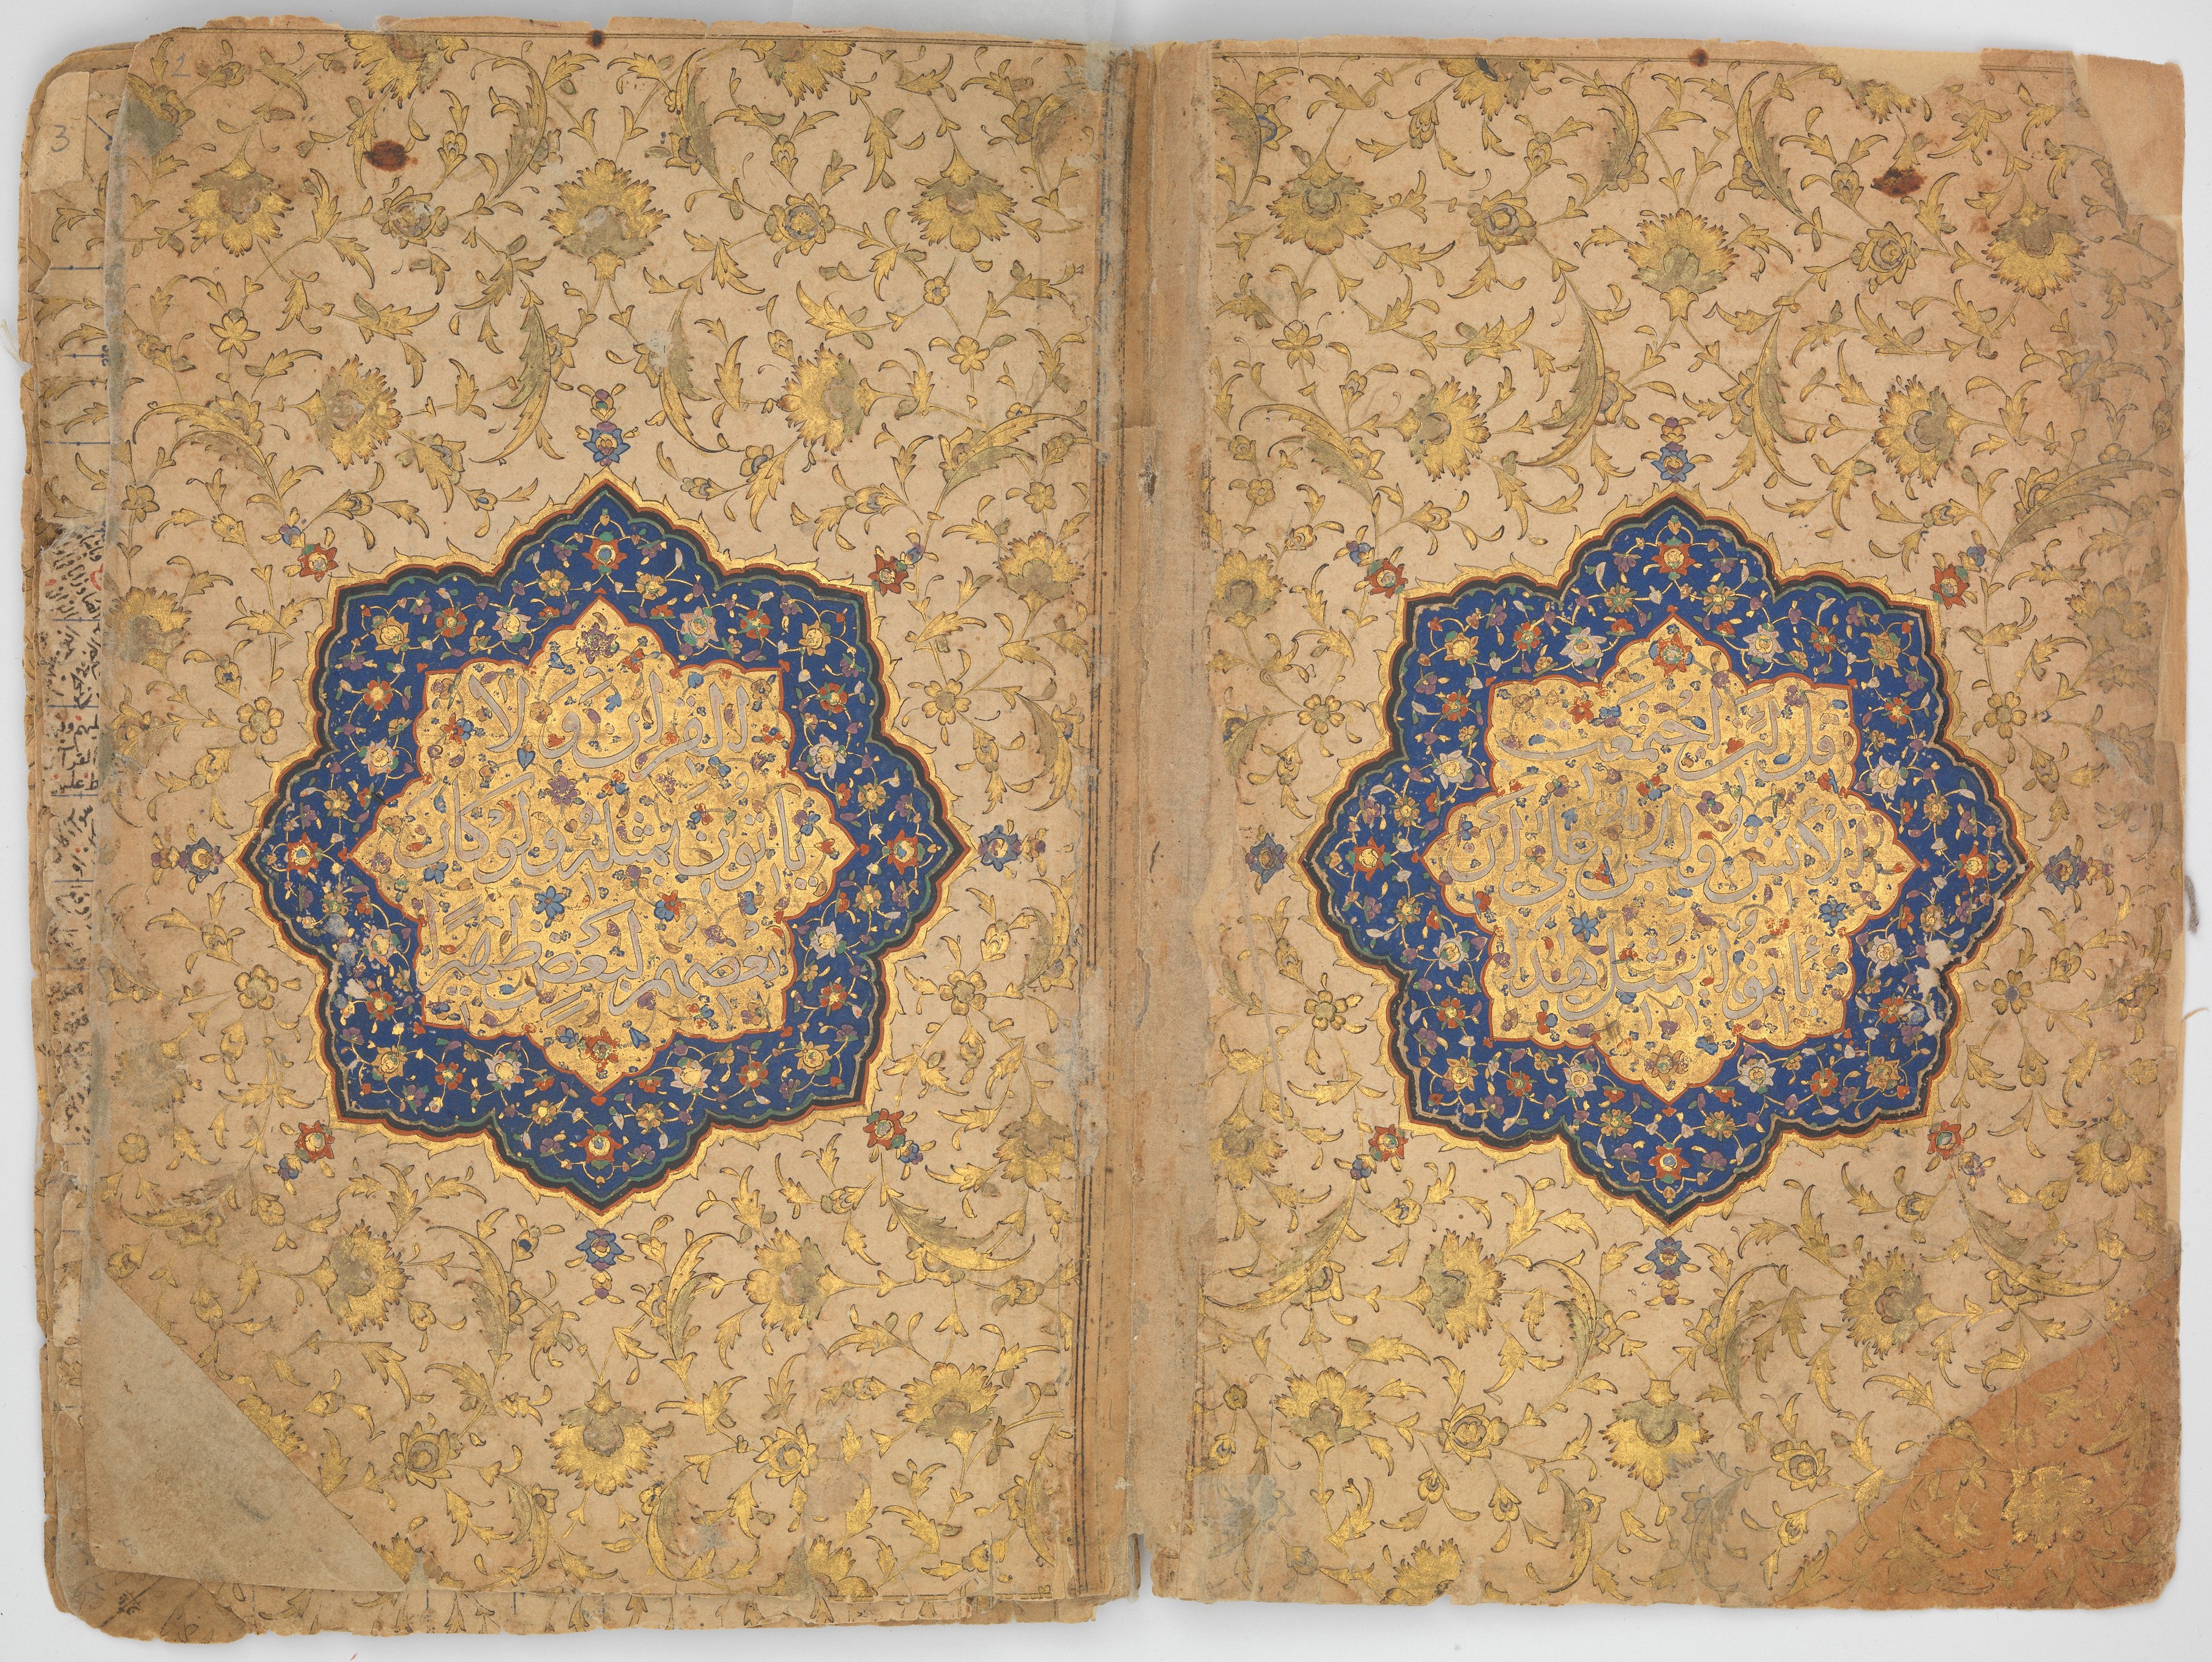 イブラーヒーム・スルタンのコーラン写本、内扉 | Qur'an of Ibrahim Sultan